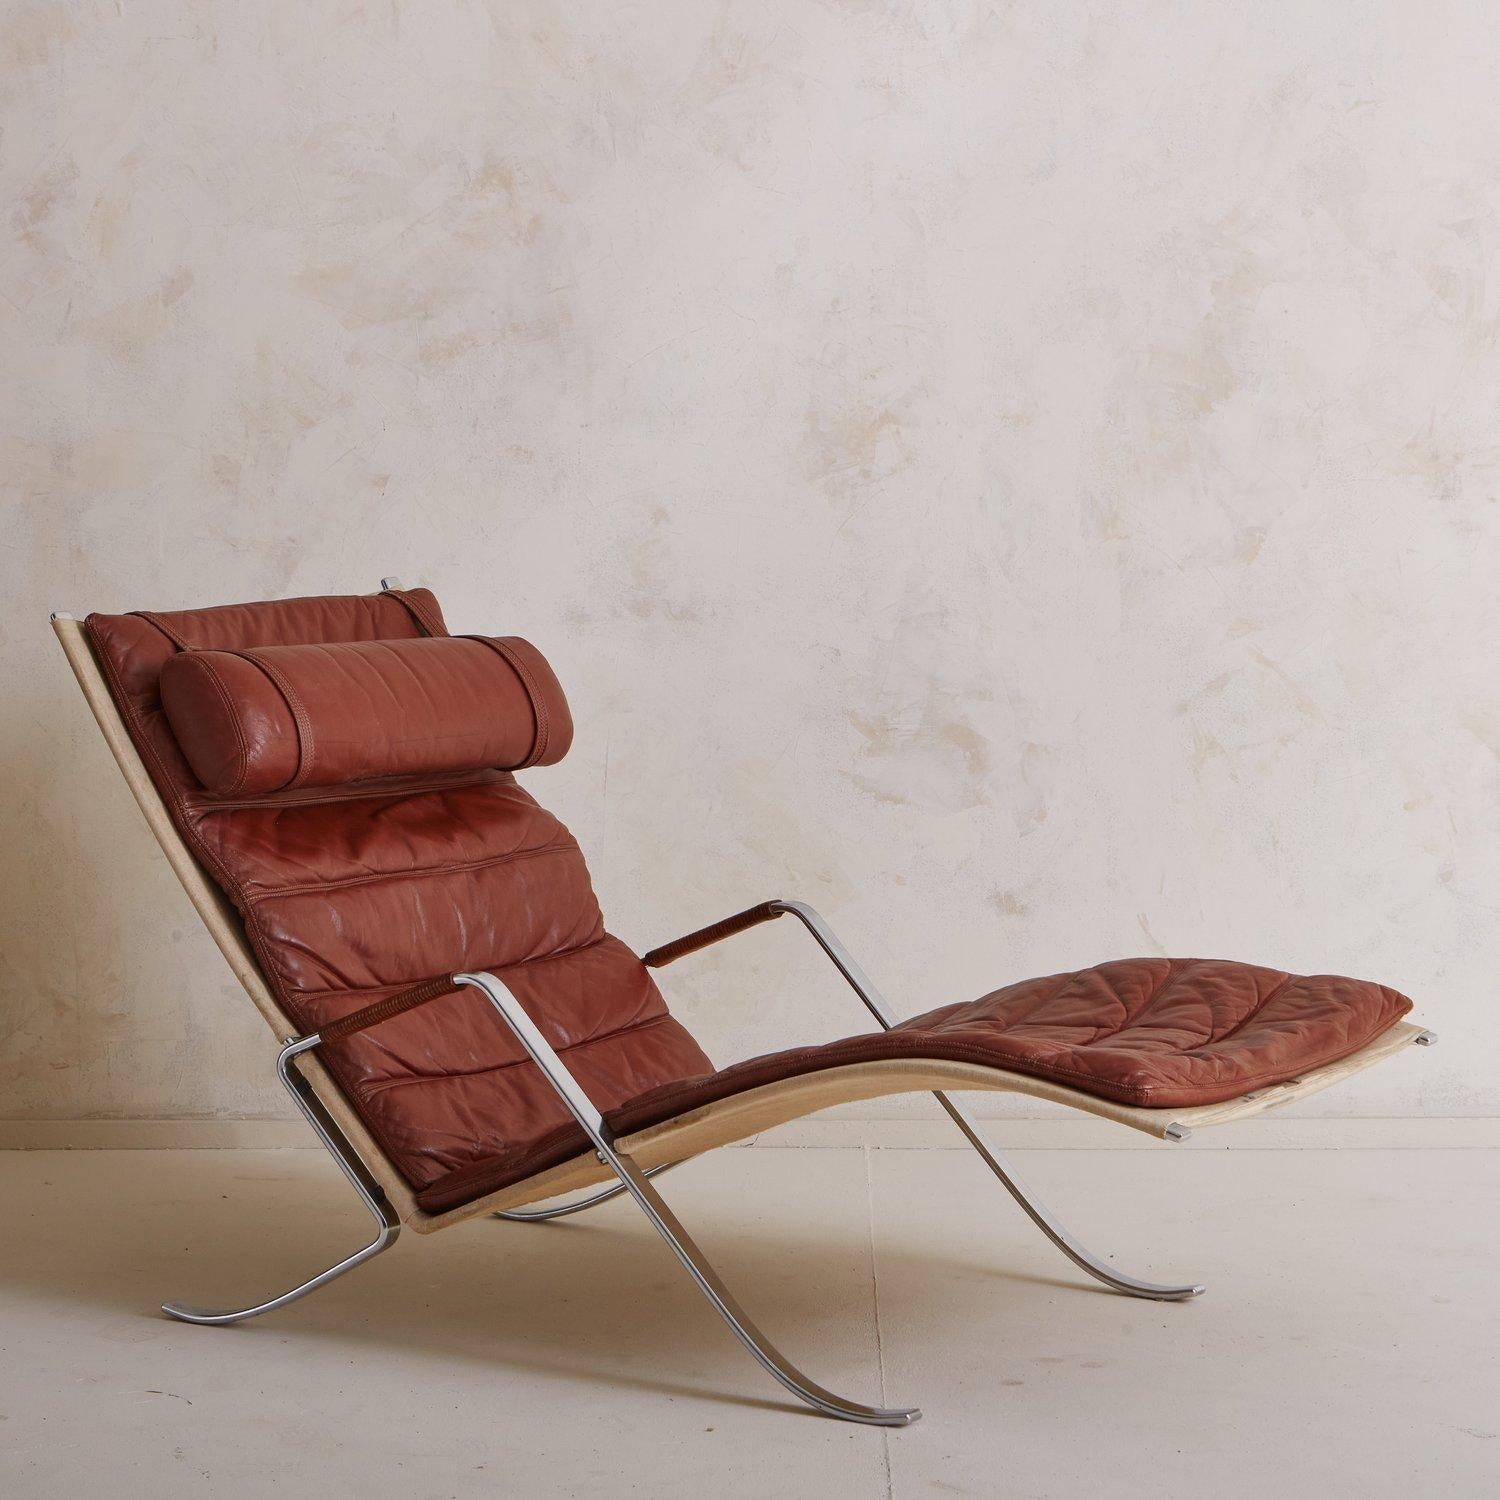 Un fauteuil vintage en forme de sauterelle par Preben Fabricius et Jørgen Kastholm pour Kill International. Ce salon sculptural comporte un magnifique coussin en cuir patiné avec des détails cannelés et un appui-tête amovible. Il présente une